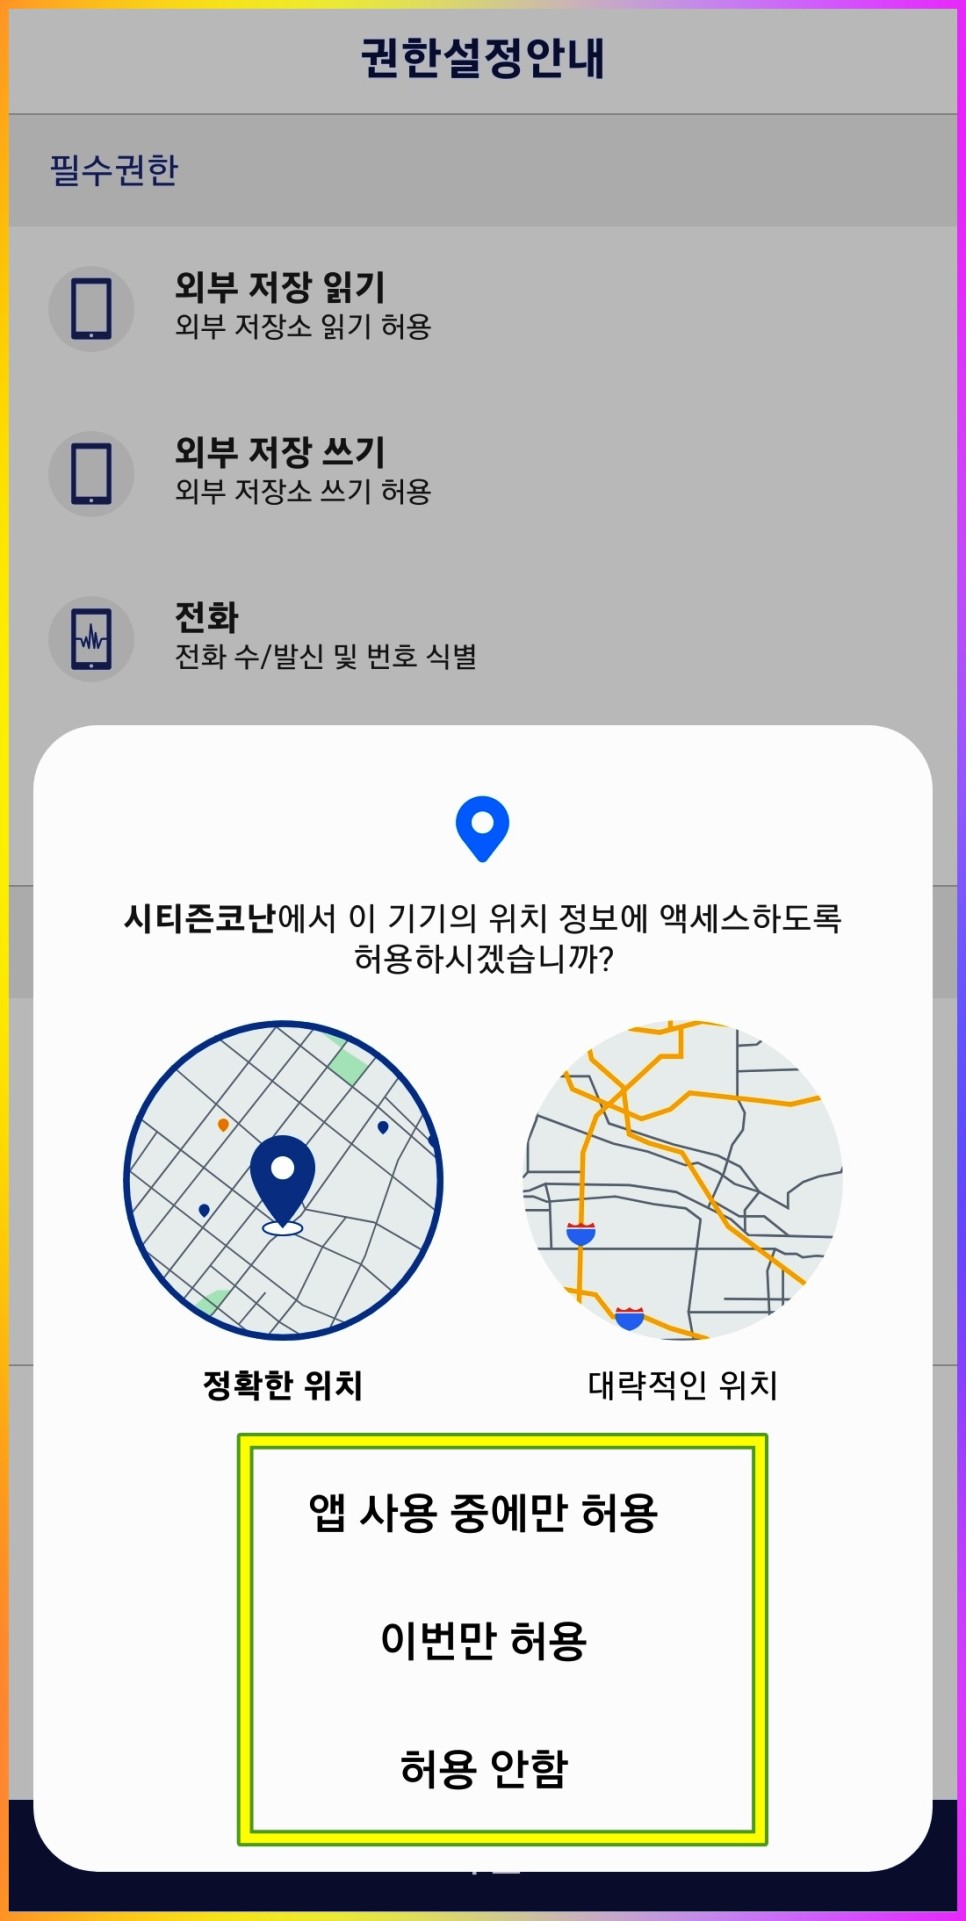 보이스 피싱 앱 시티즌 코난 설치 방법 및 사용법 알아볼게요